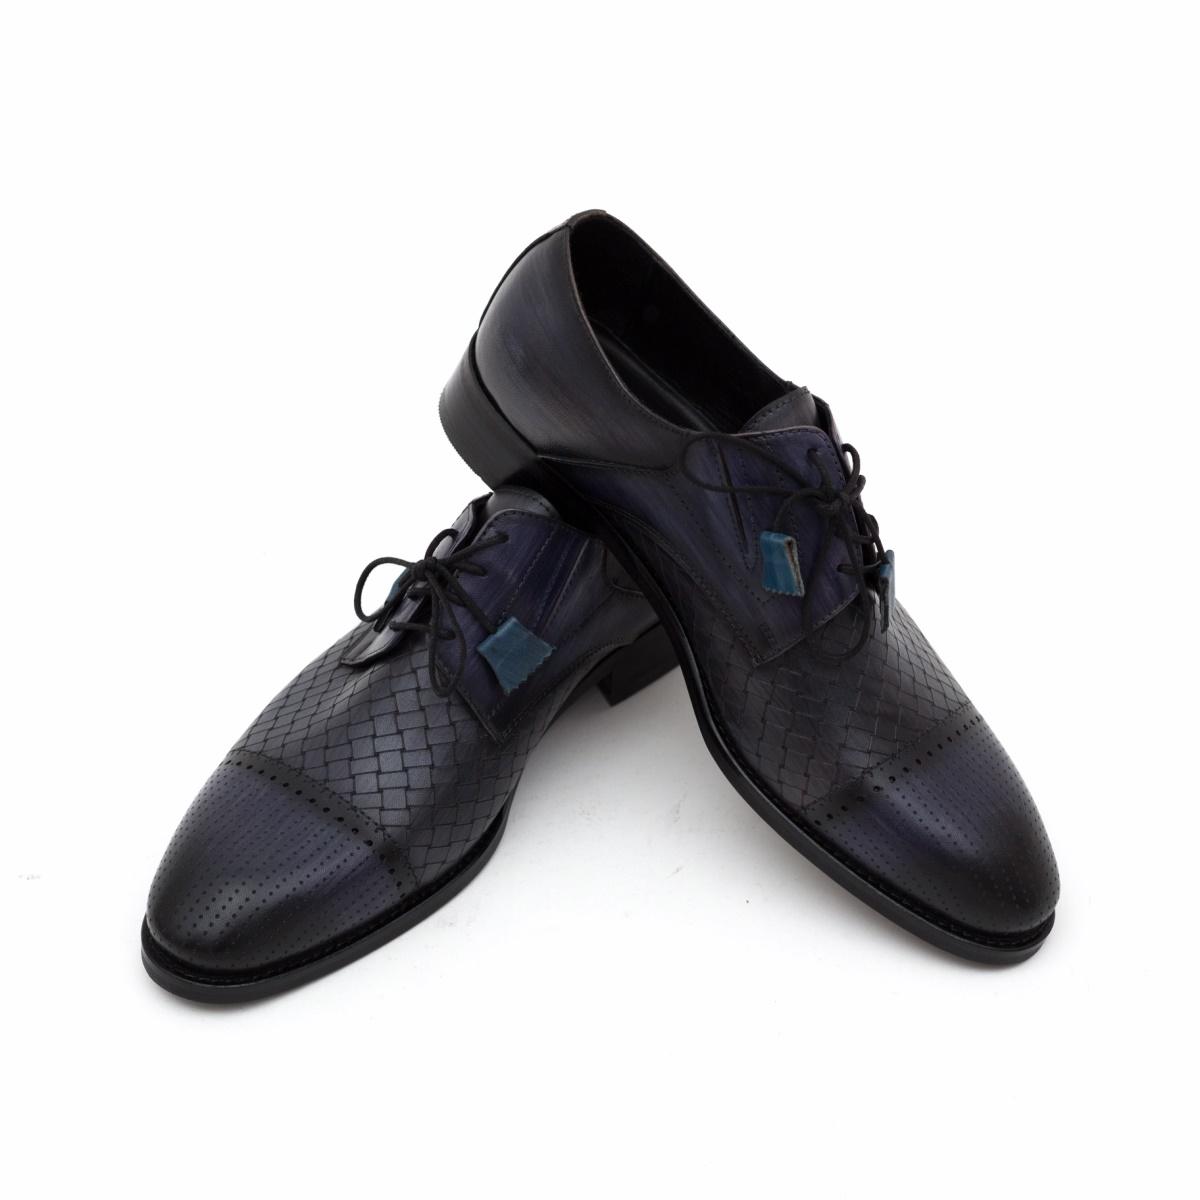 Selected image for SANTOS & SANTORINI Muške cipele Joan crno-teget